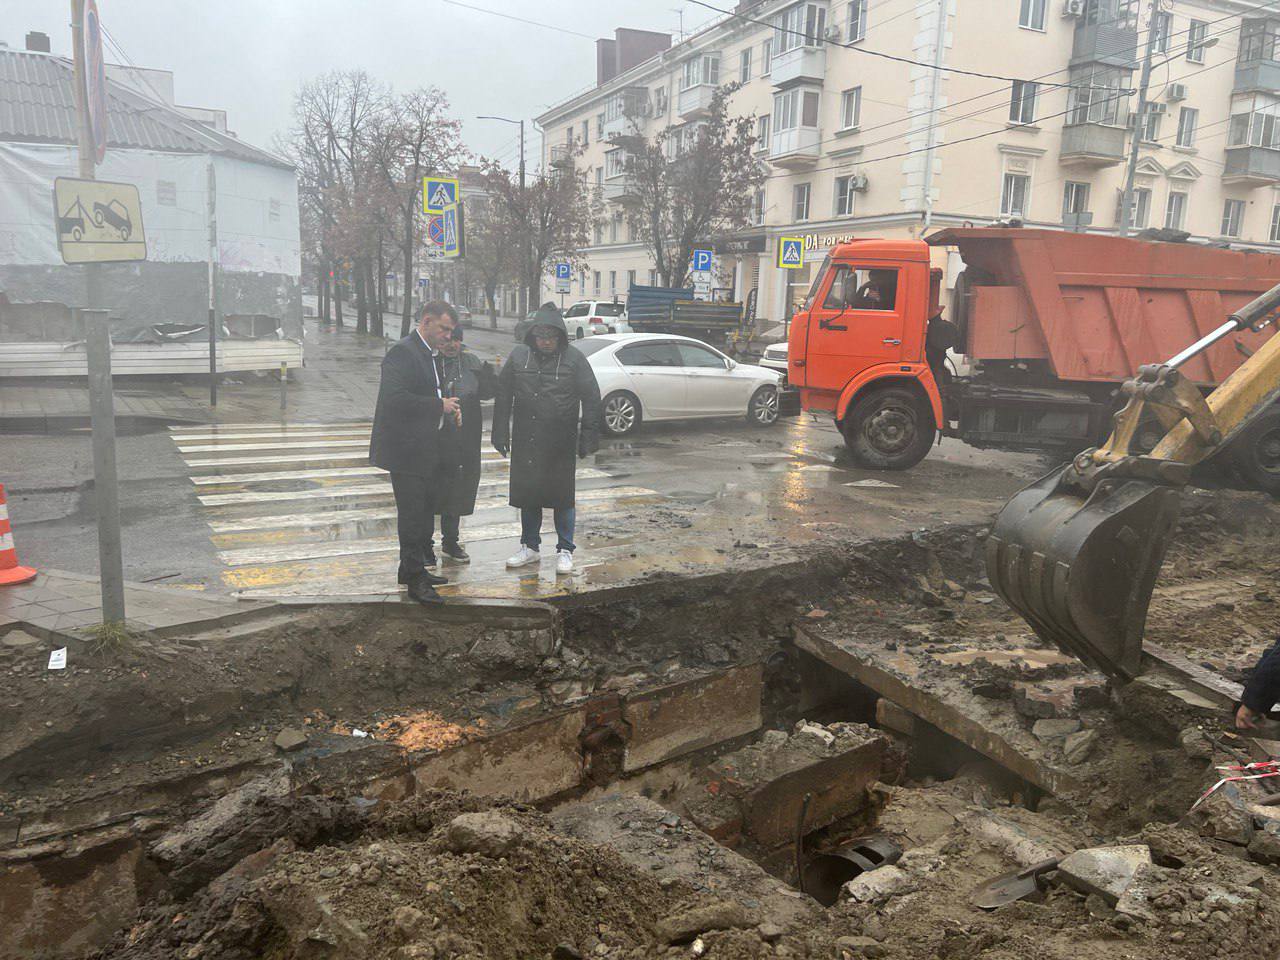 Восстановительные работы после аварии на теплосети в Краснодаре. Фото © Telegram / Евгений Наумов